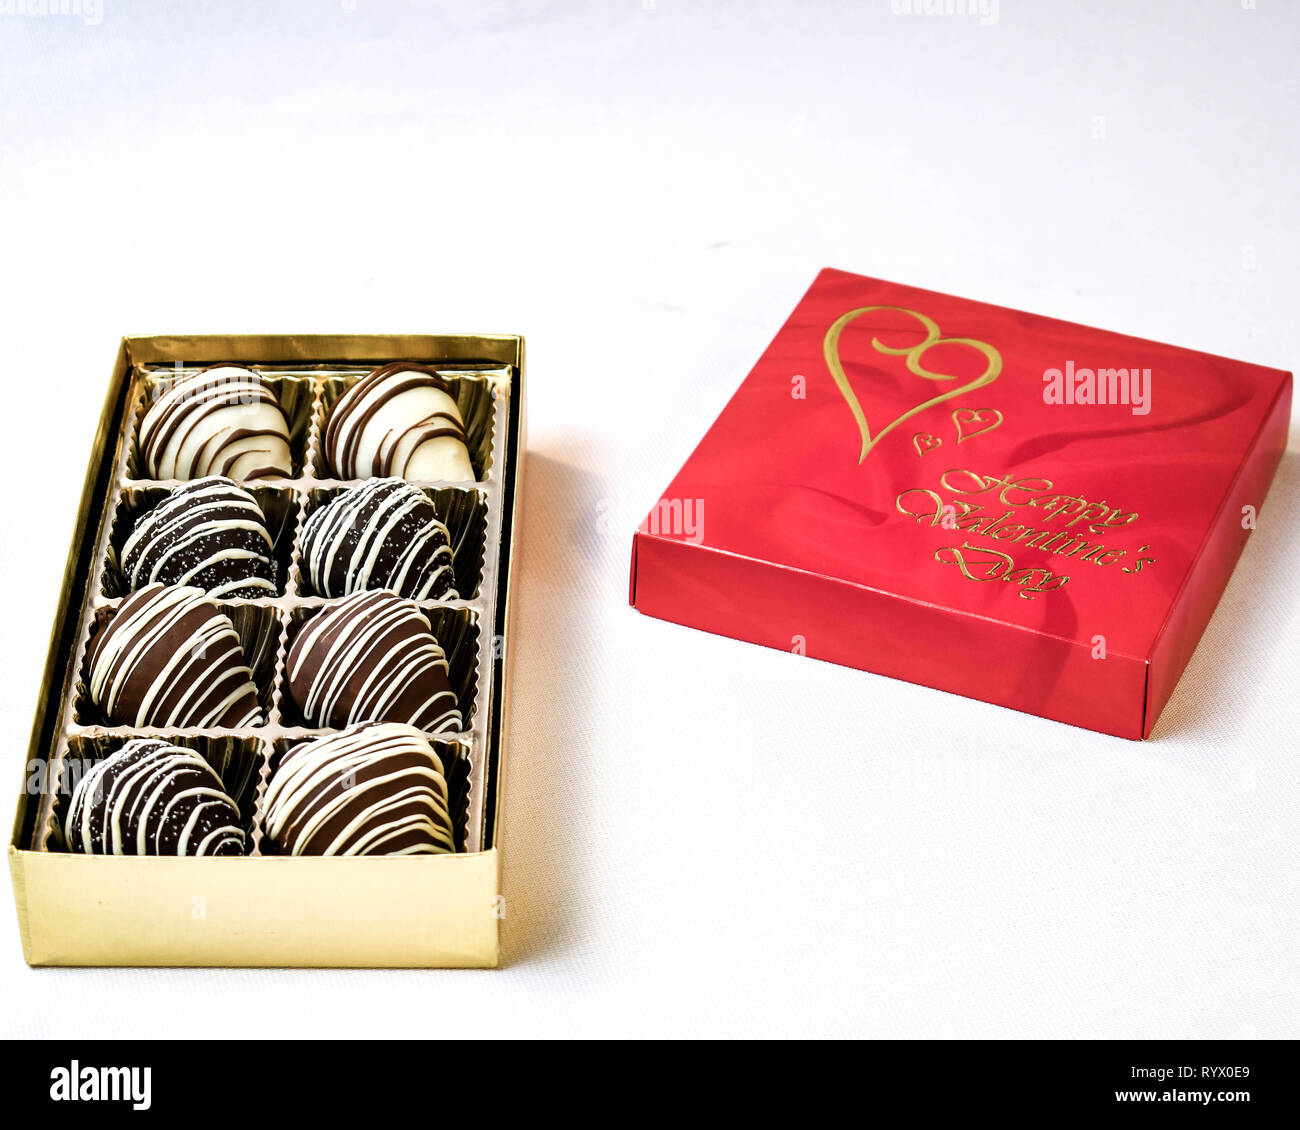 Saint-valentin bonbons, des fraises au chocolat. Rayé de blanc, noir et le chocolat au lait. Banque D'Images